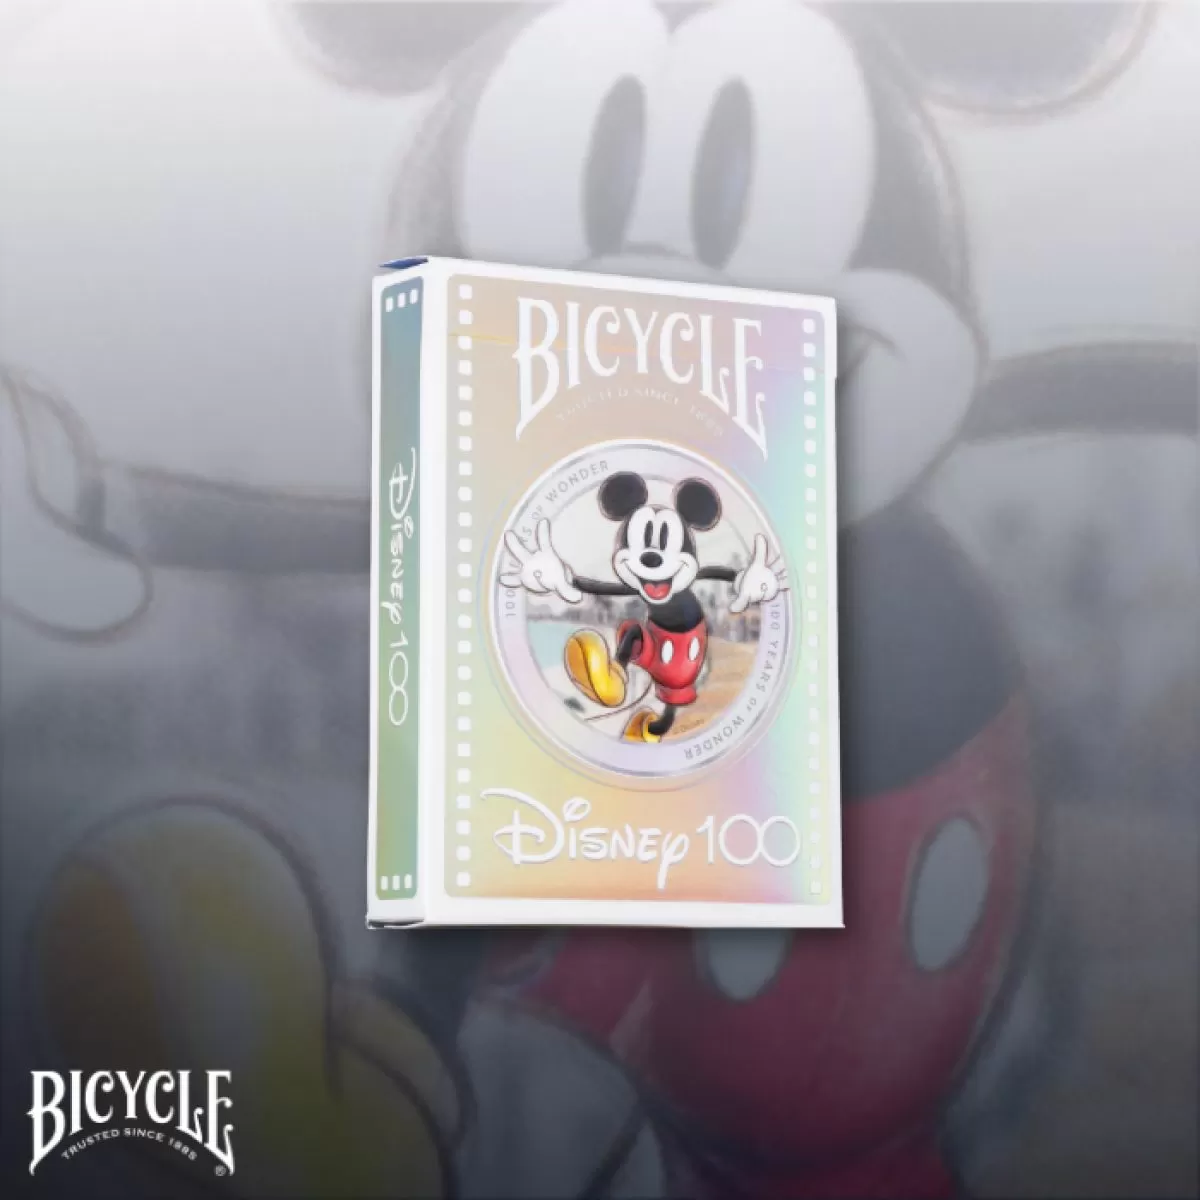 Bicycle Disney 100 Years of Wonders Playing Cards Display (6